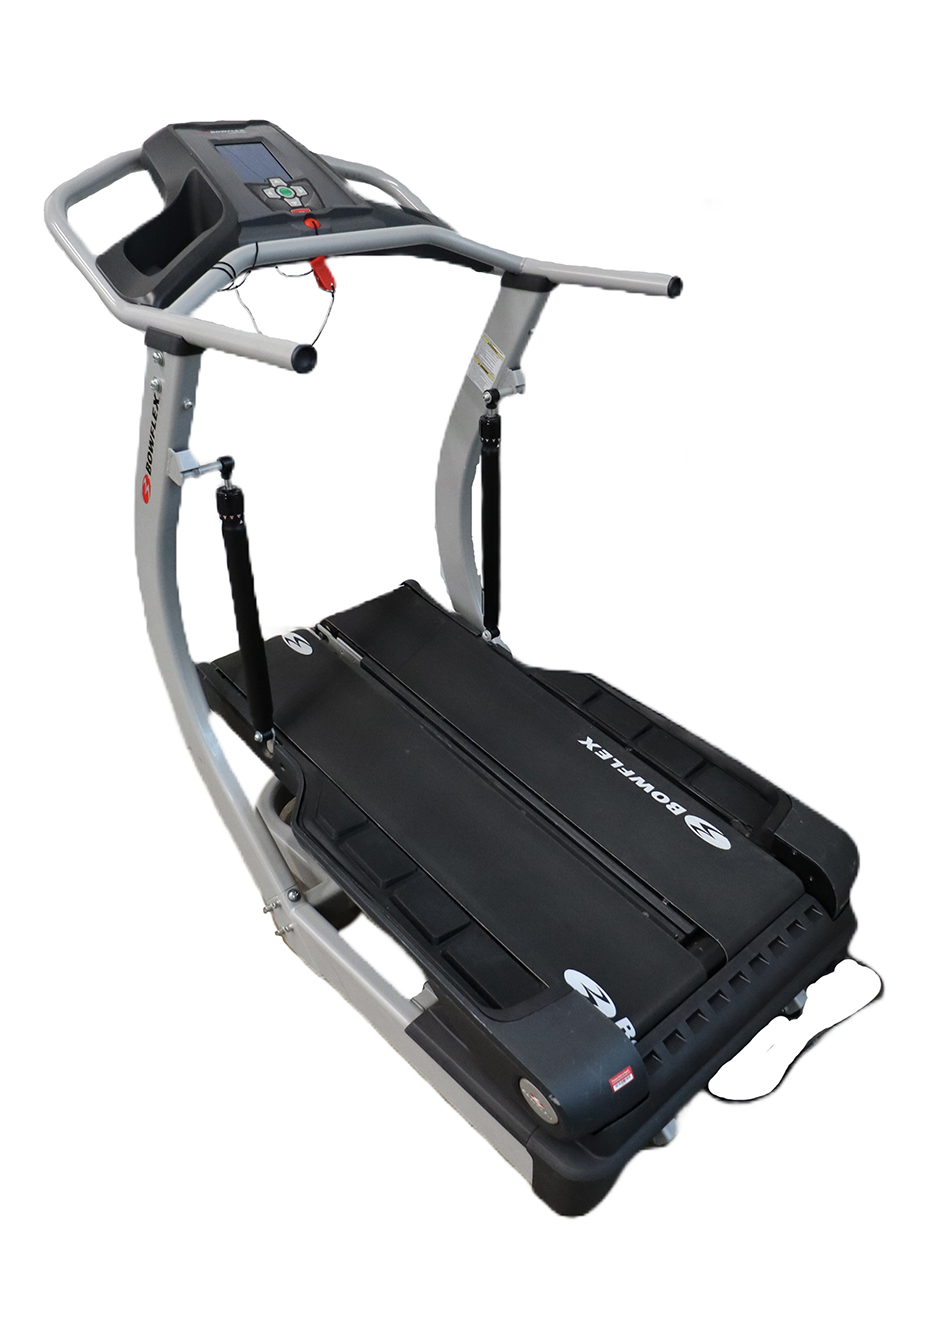 Used Bowflex TC5500 00323 Treadmill